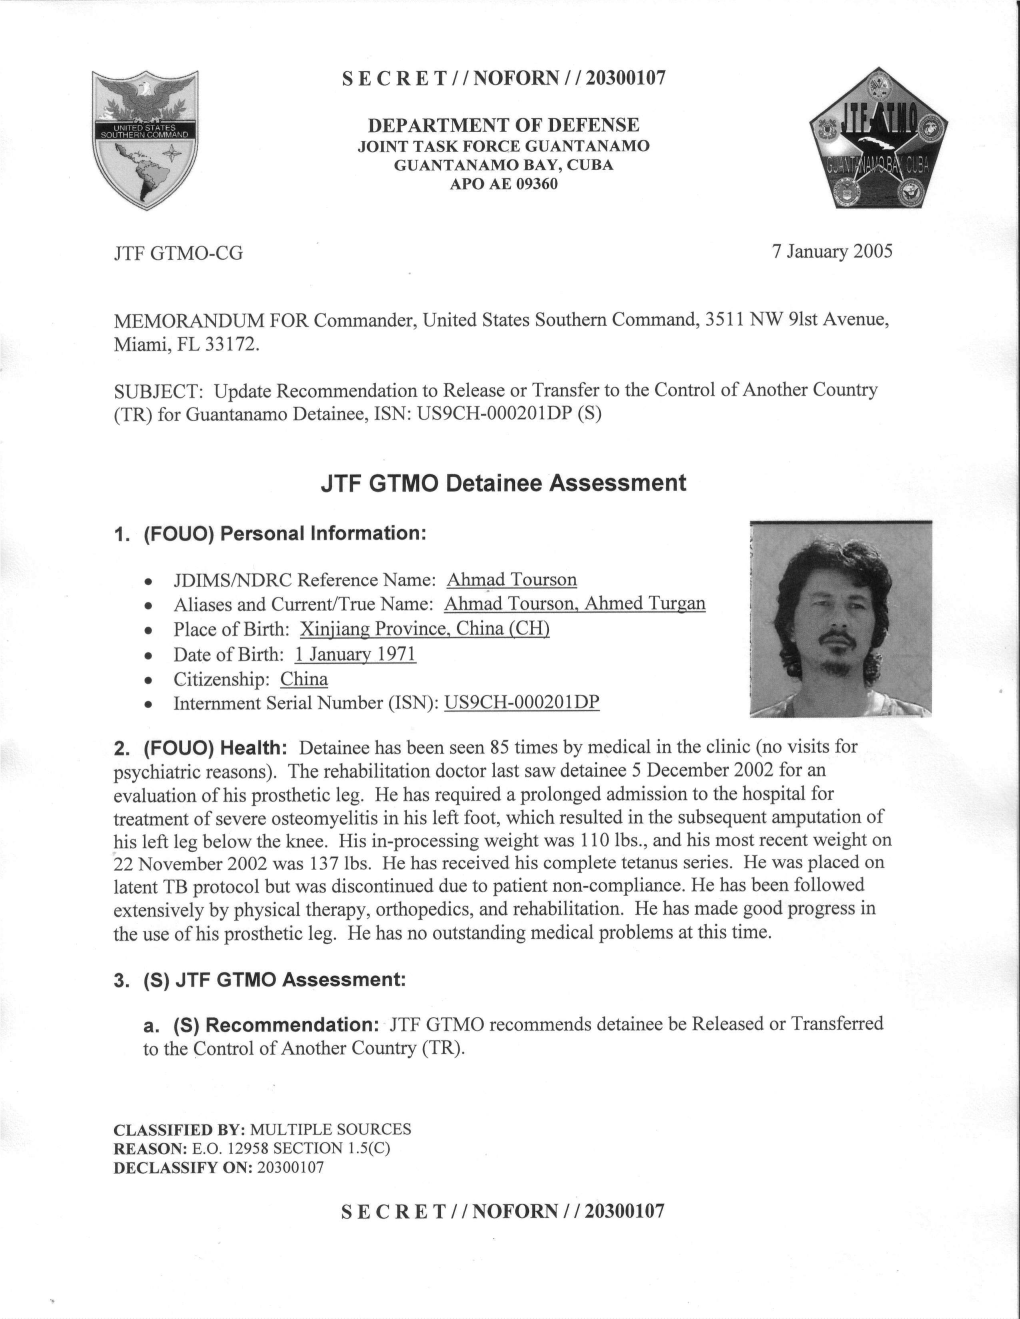 JTF GTMO Detainee Assessment